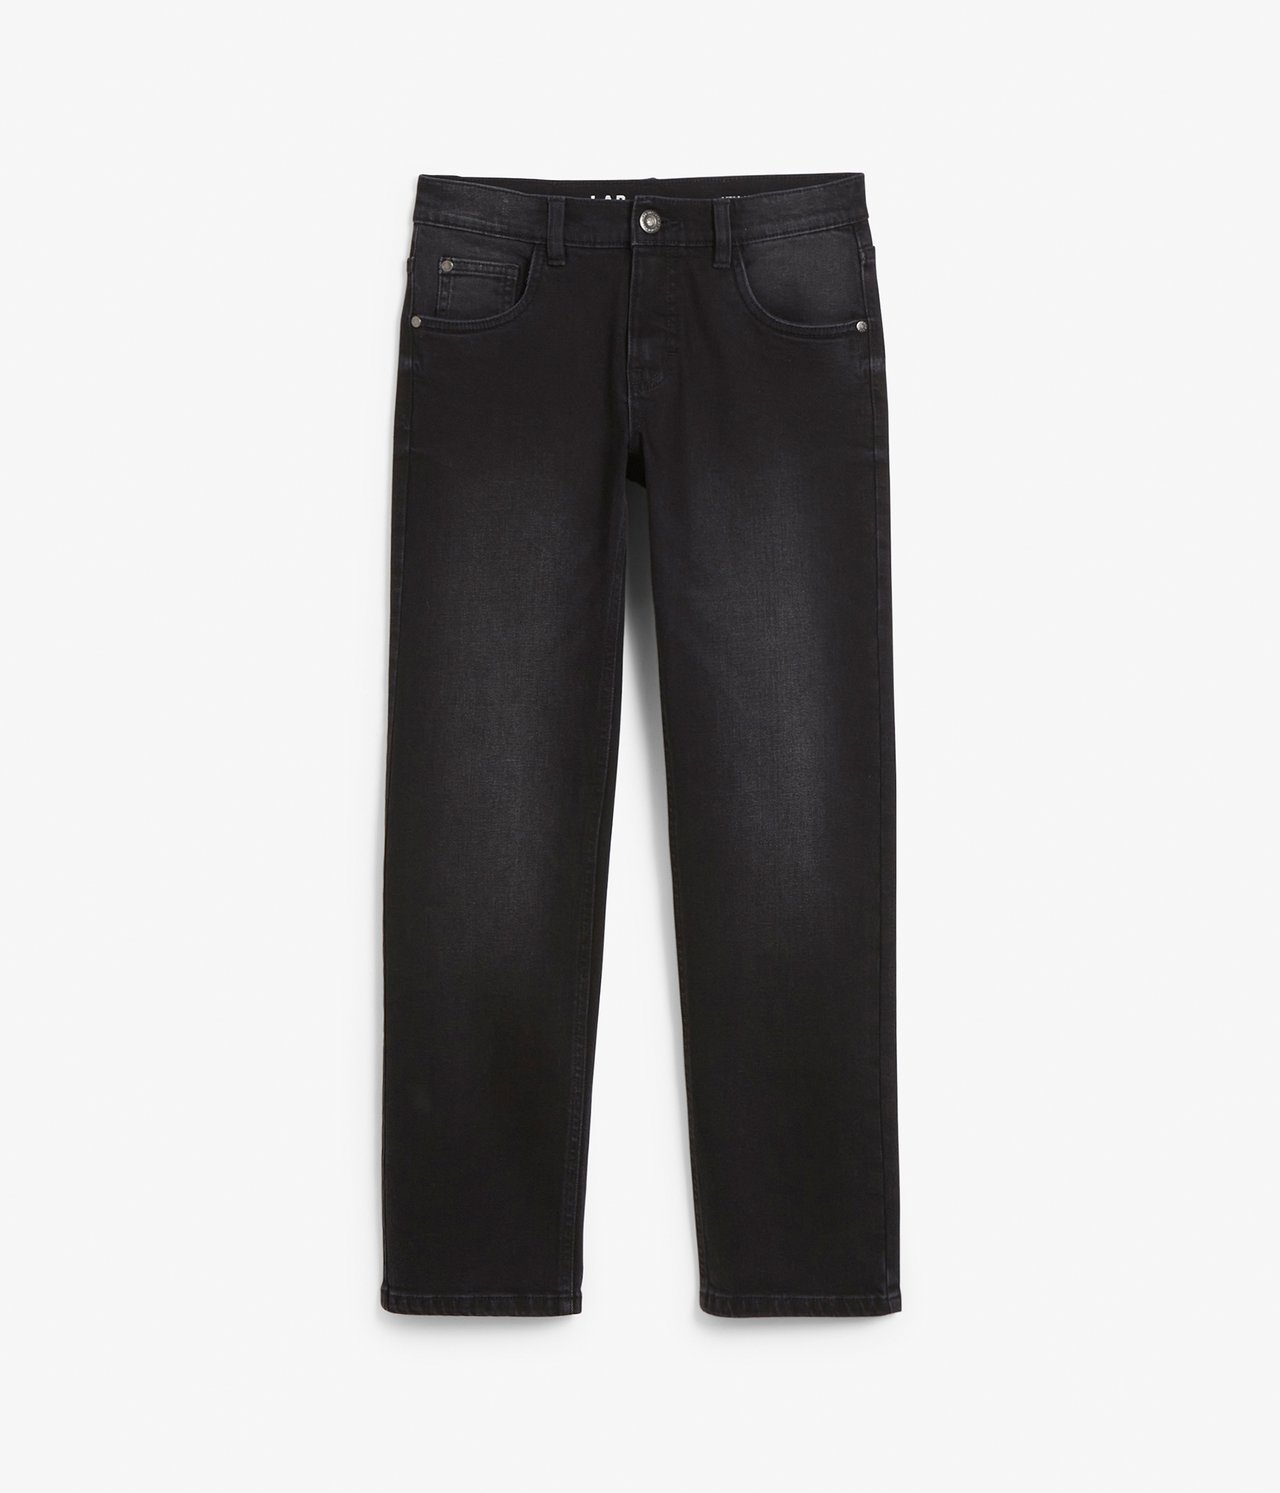 Retro jeans regular fit - Musta denimi - 2